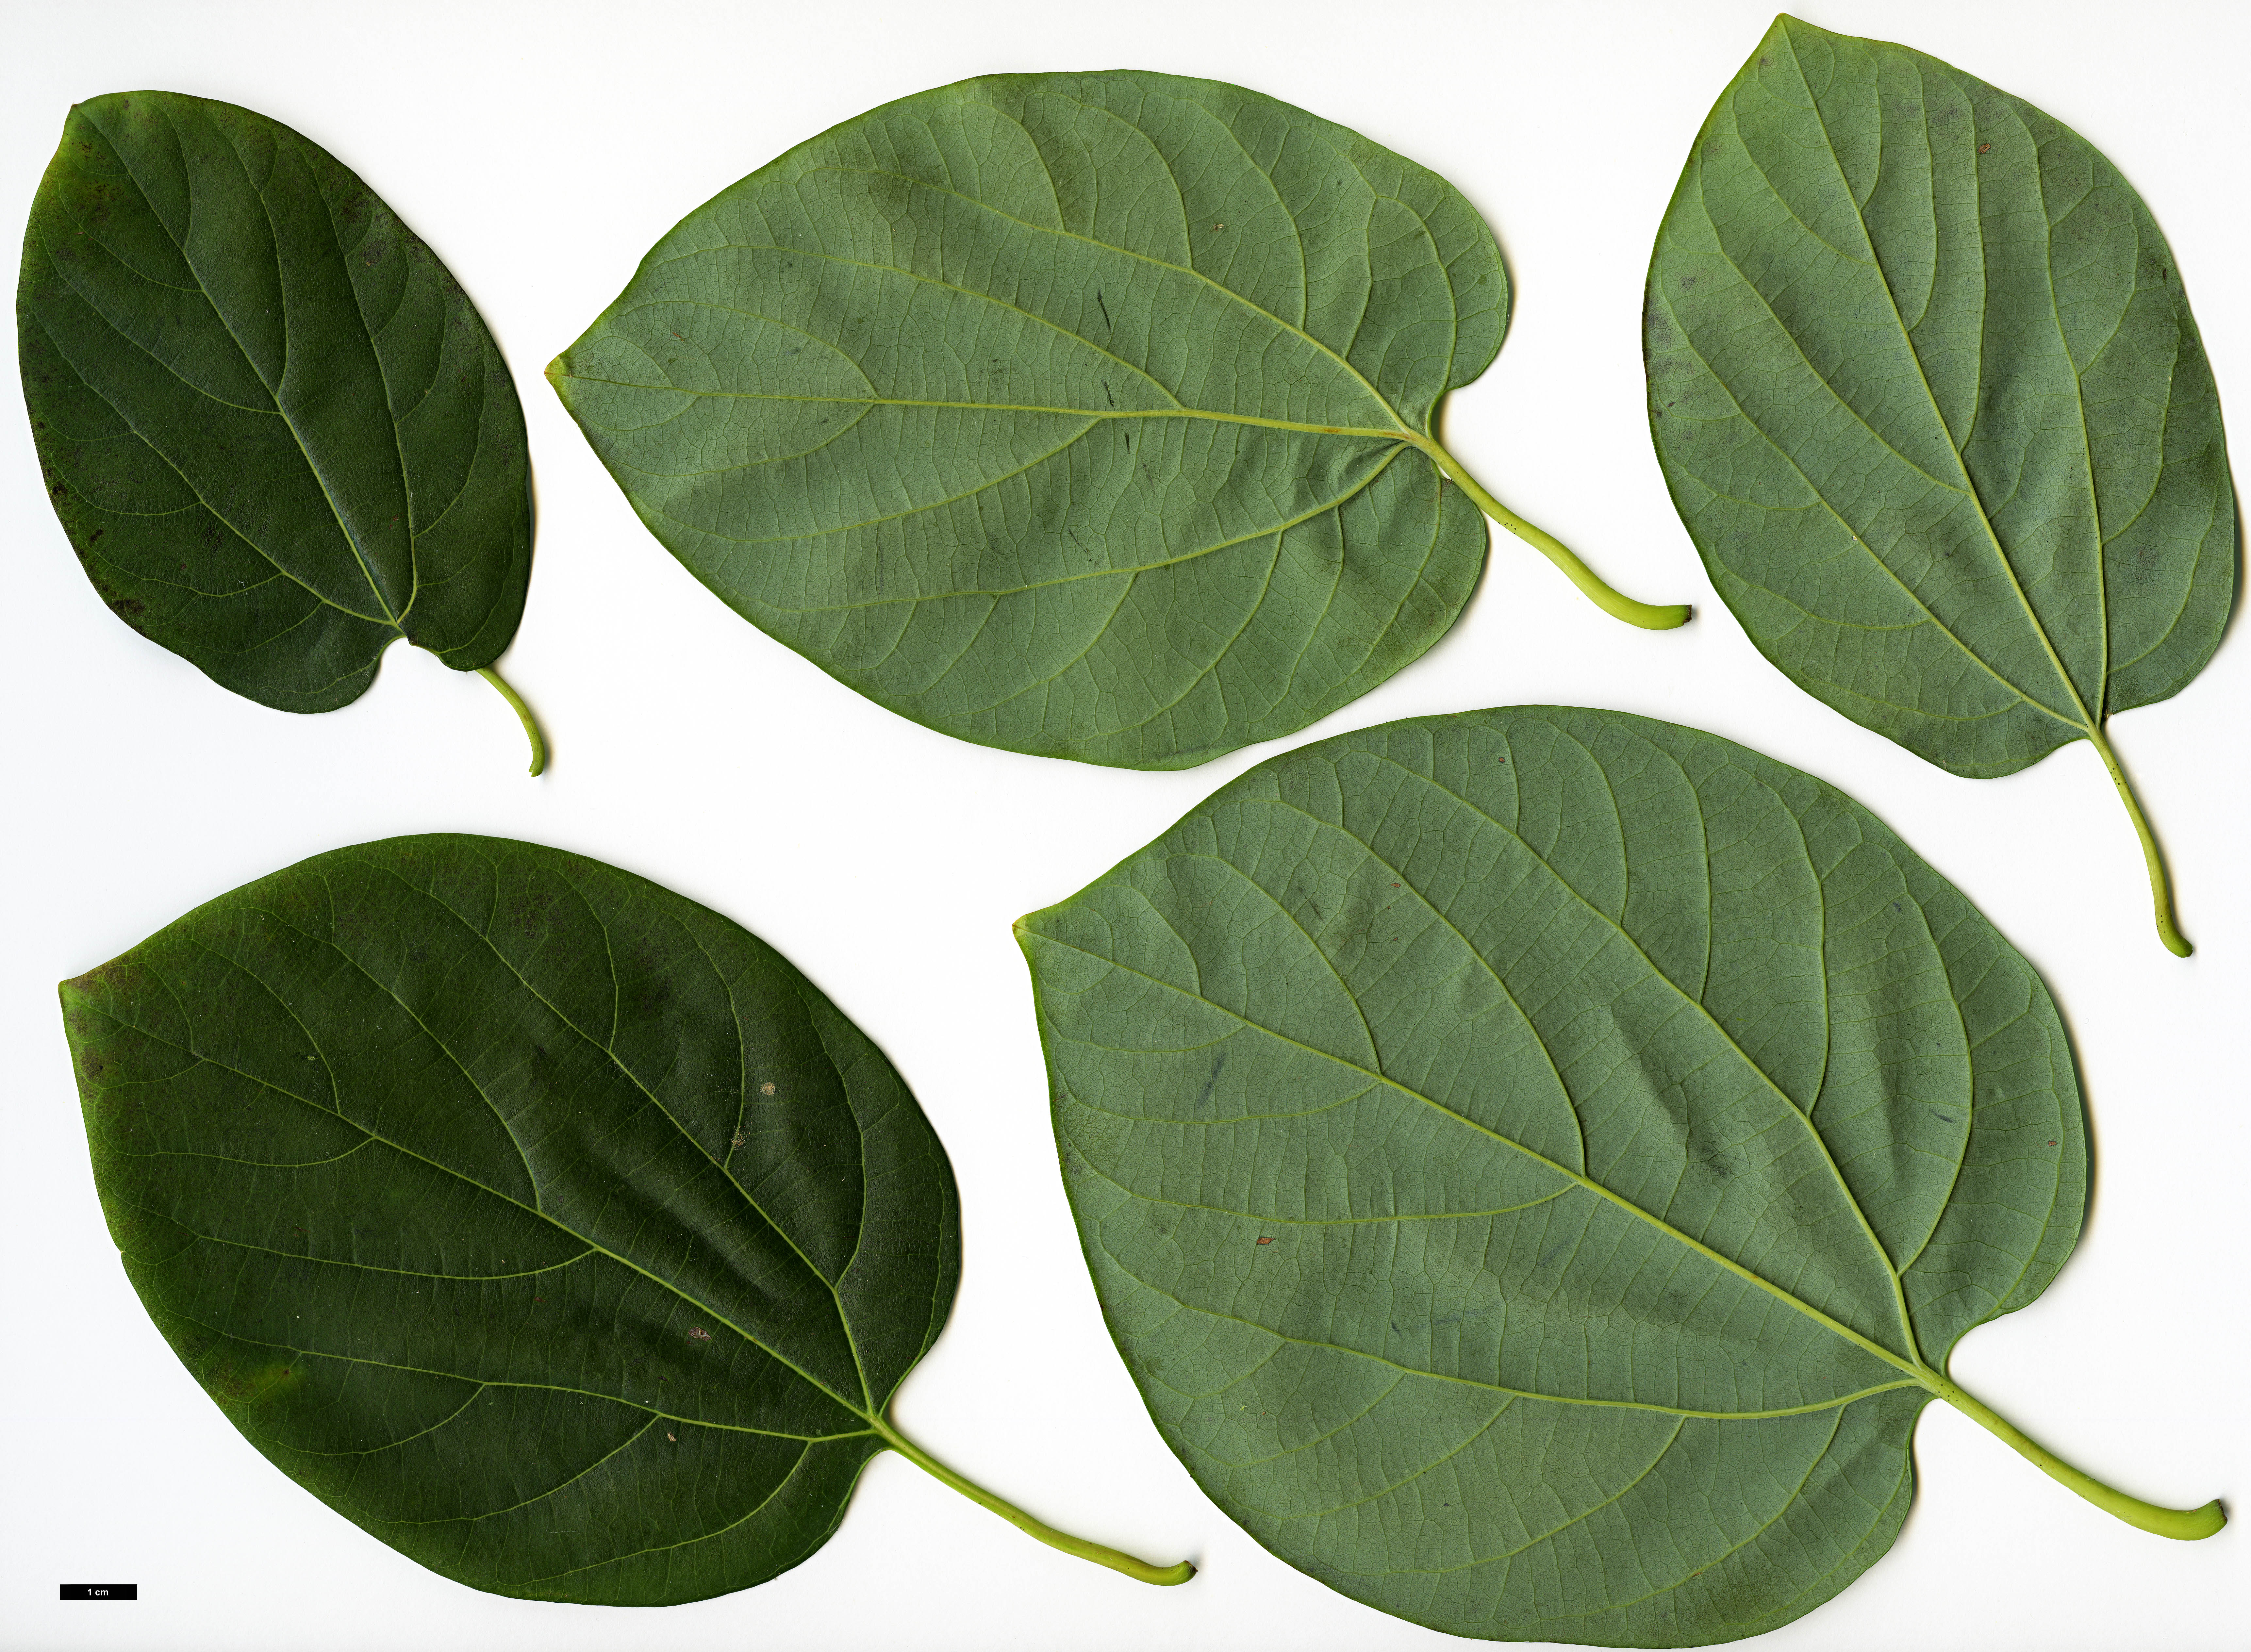 High resolution image: Family: Lauraceae - Genus: Lindera - Taxon: heterophylla